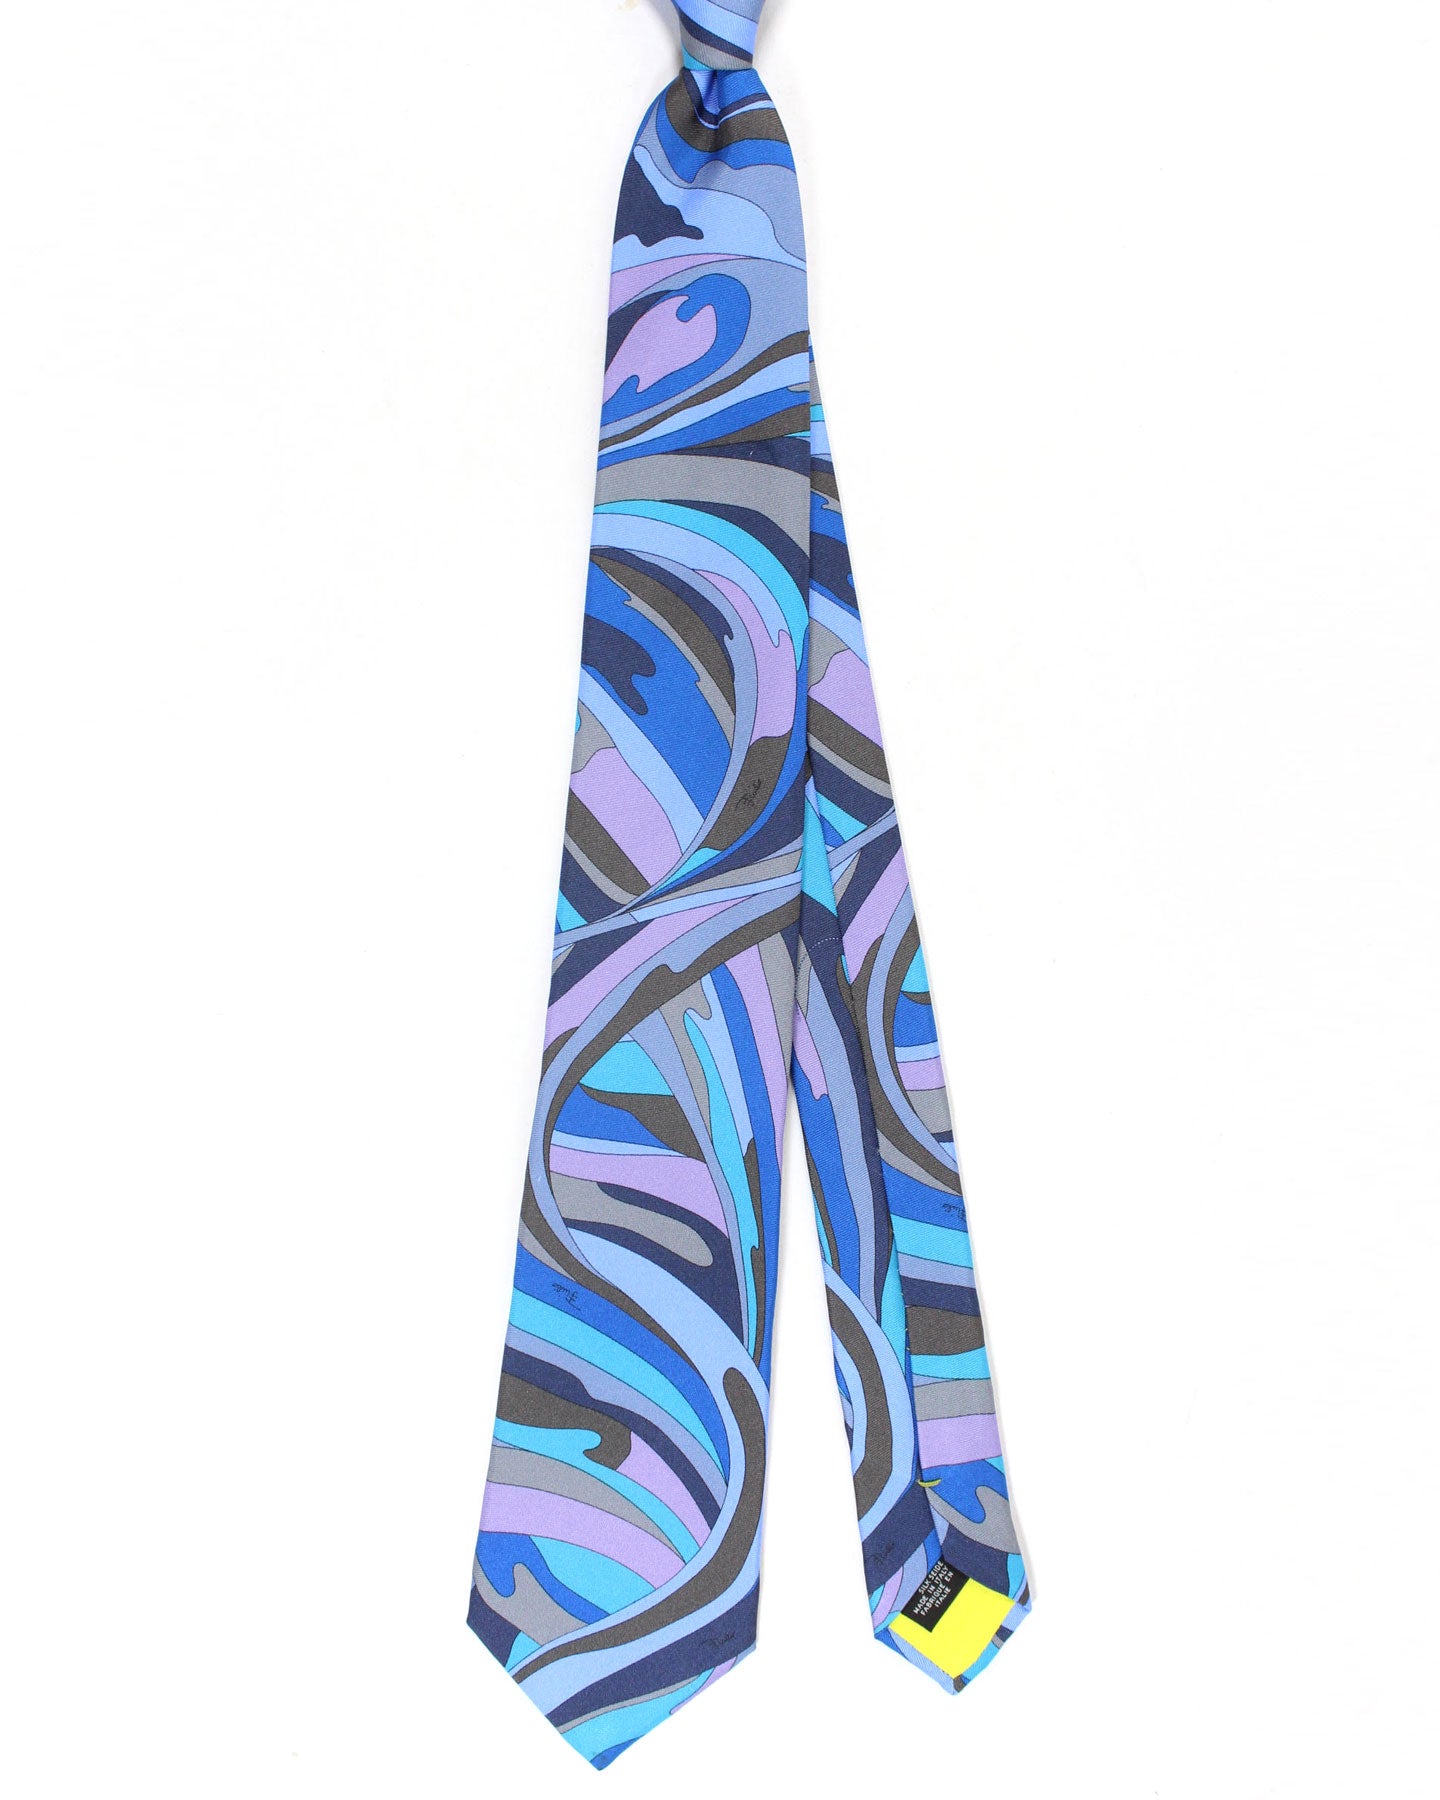 Emilio Pucci Silk Tie Signature Blue Gray Brown Lilac Swirl Design